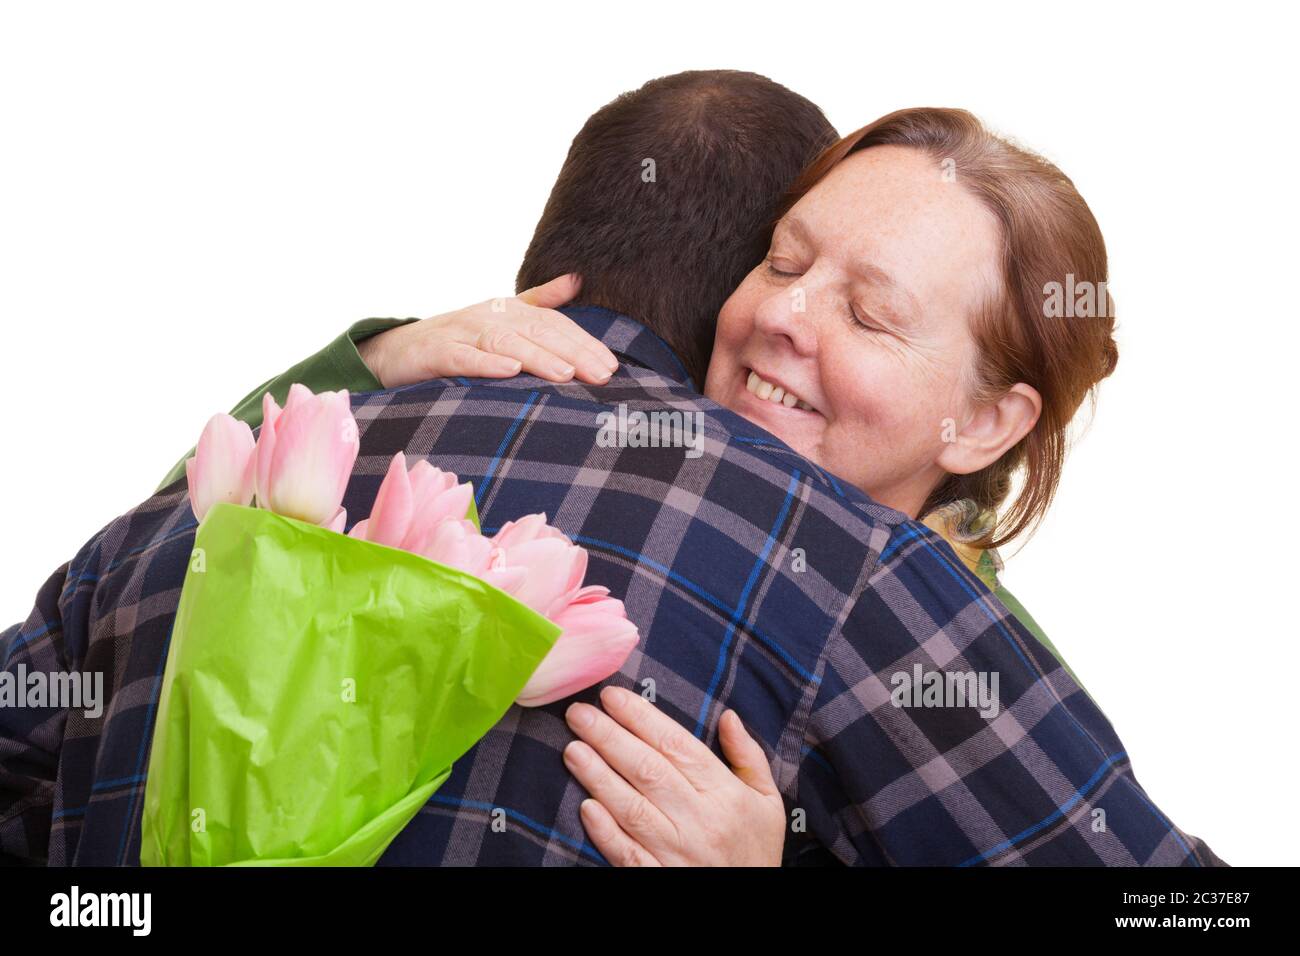 Homme avec un bouquet de tulipes roses caché derrière son dos embrassant la femme âgée, isolée sur fond blanc. Fête des mères, Valenti Banque D'Images